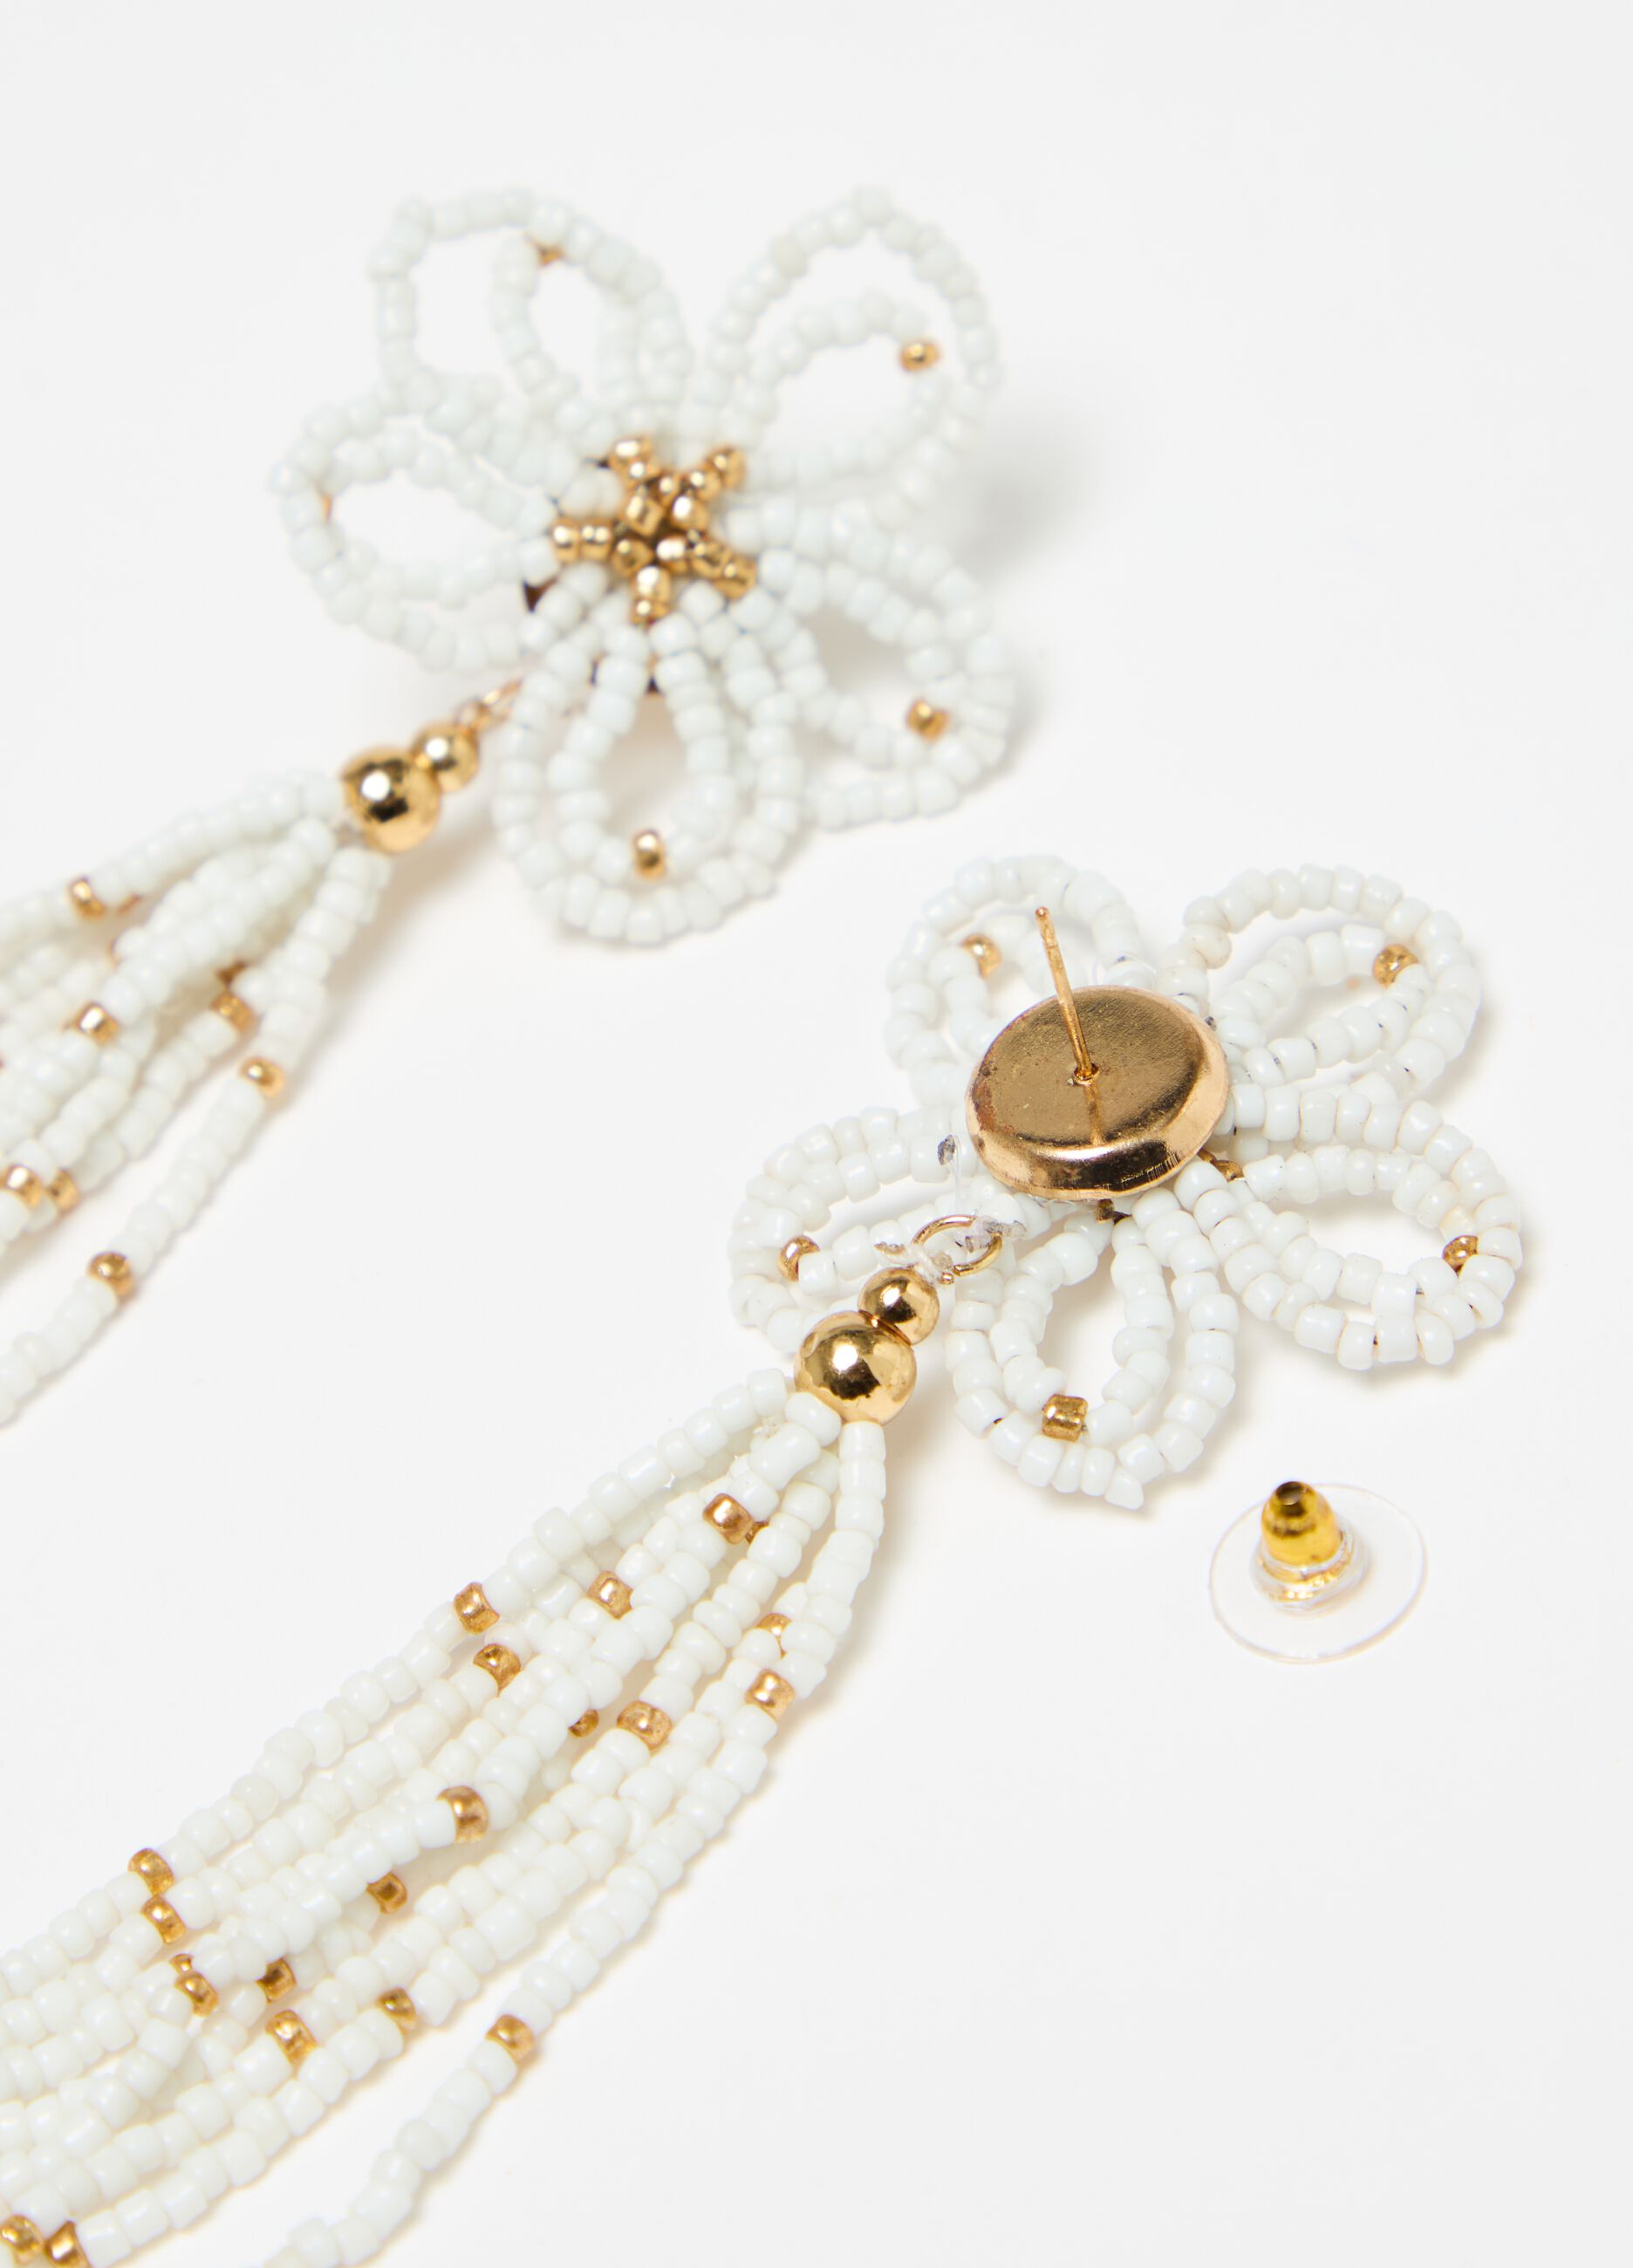 Flower pendant earrings with fringing